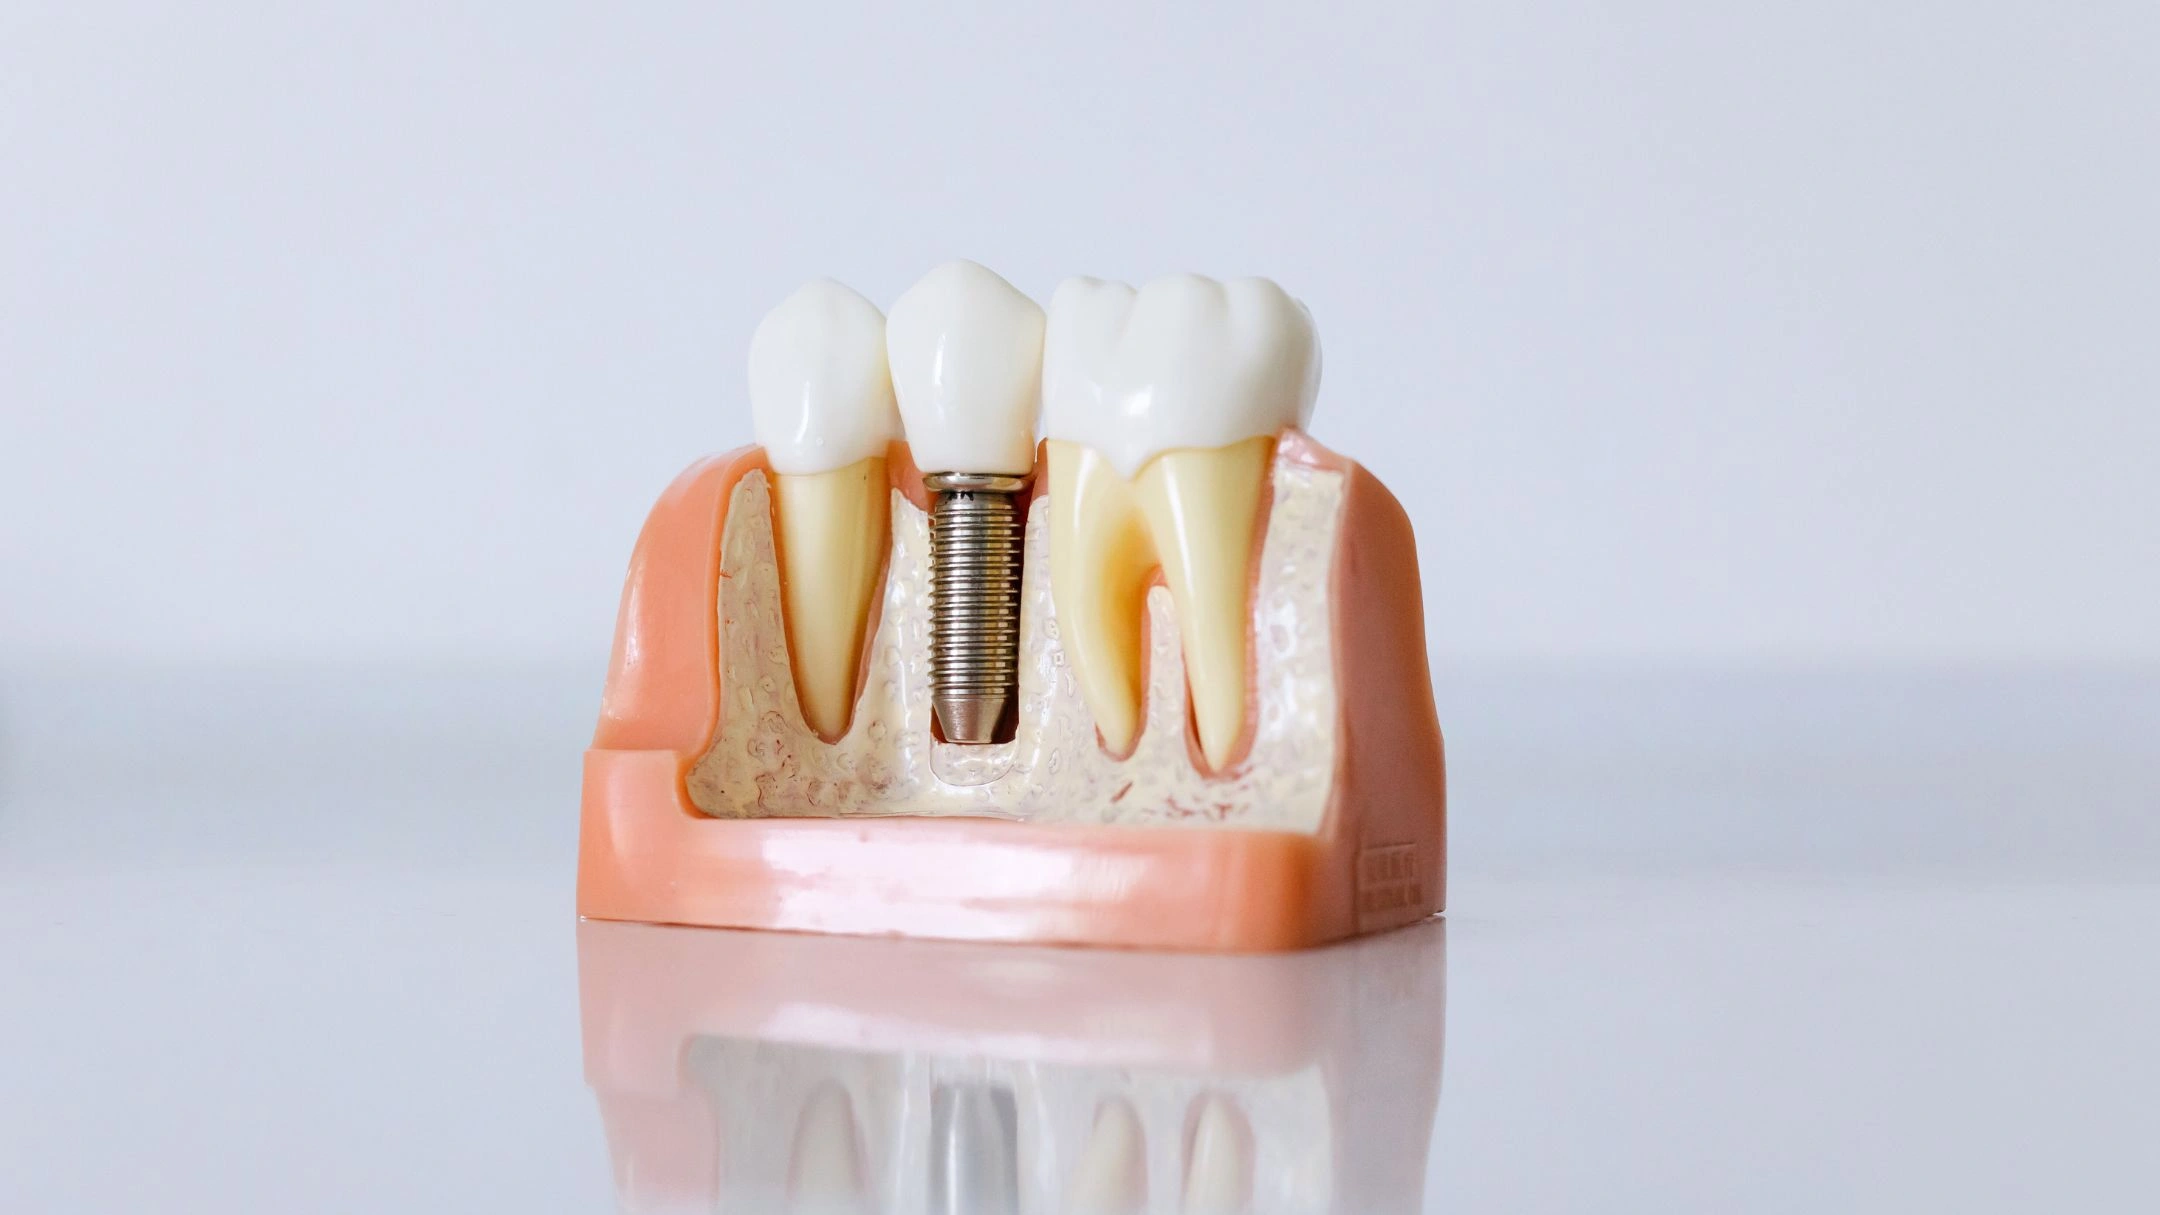 Impianti dentali Padova - come avere il sorriso di quando eri giovane